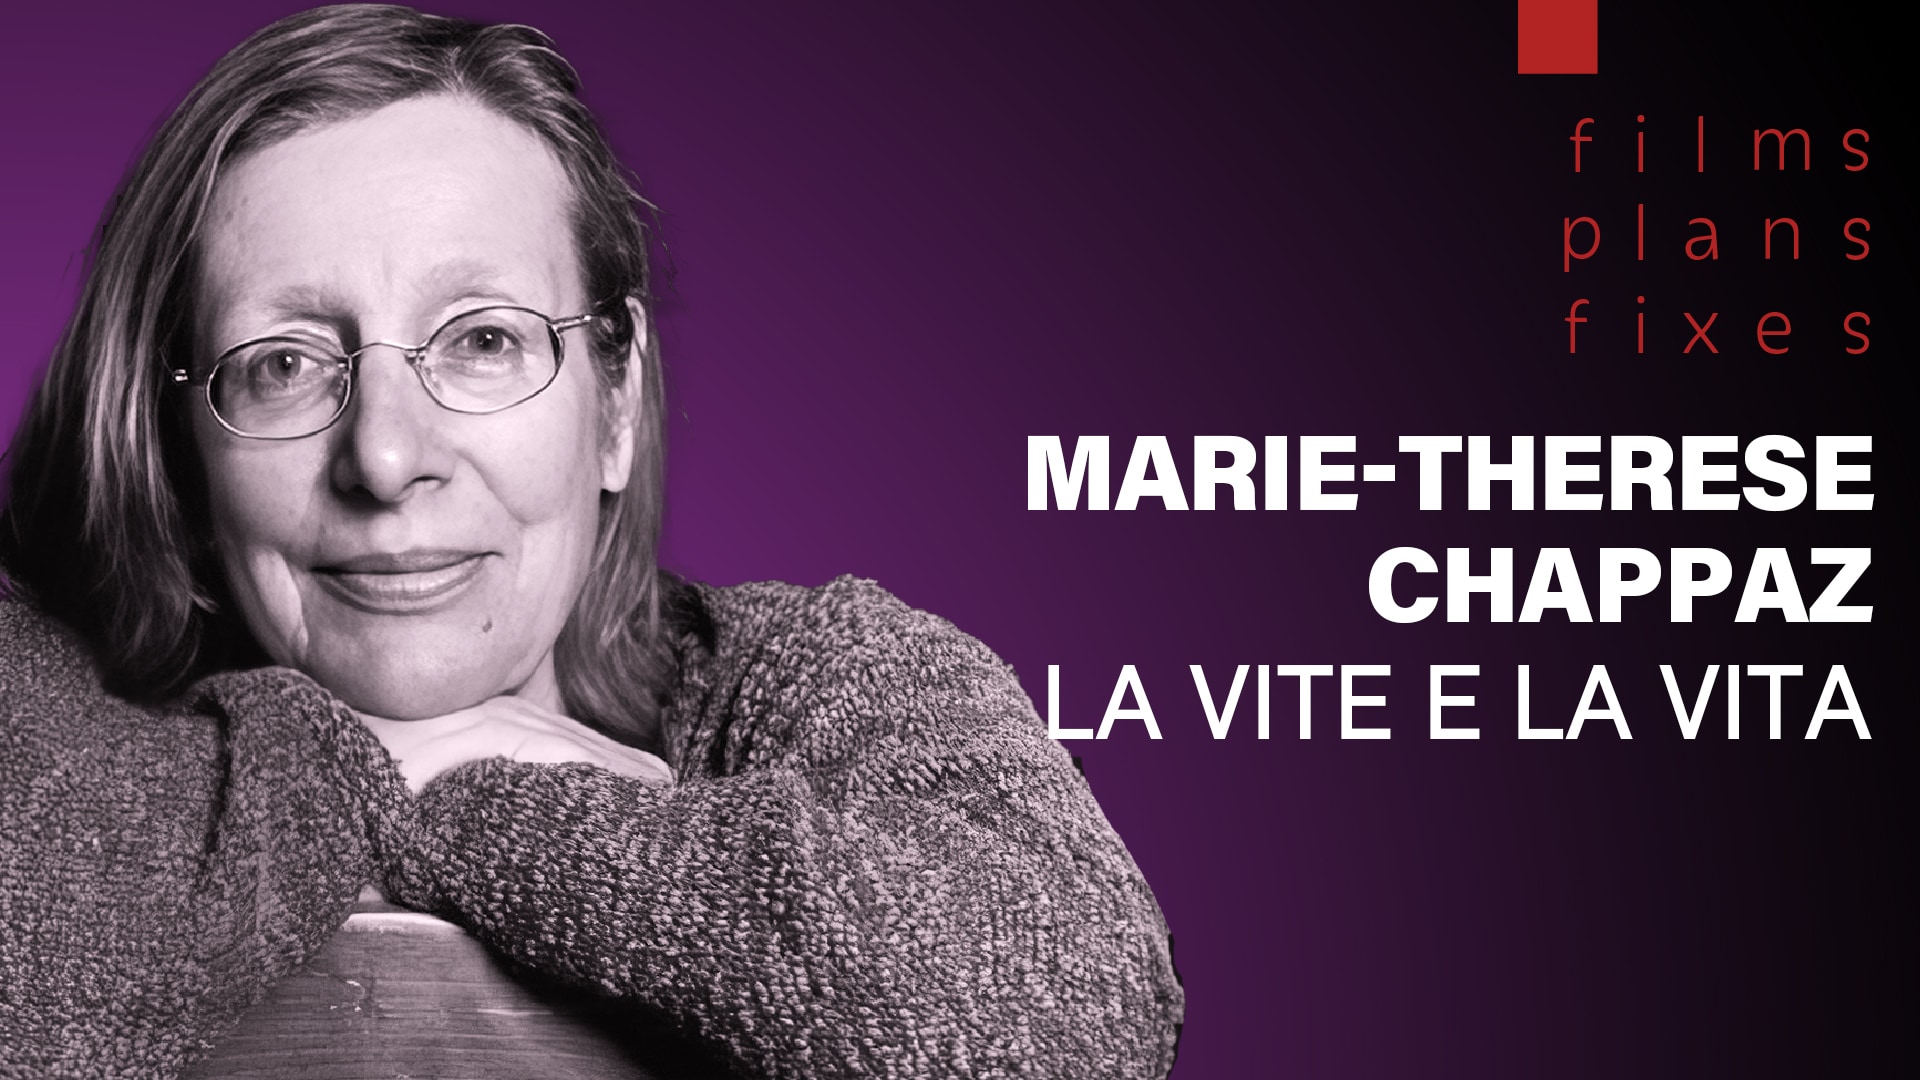 Marie-Thérèse Chappaz, la vite e la vita